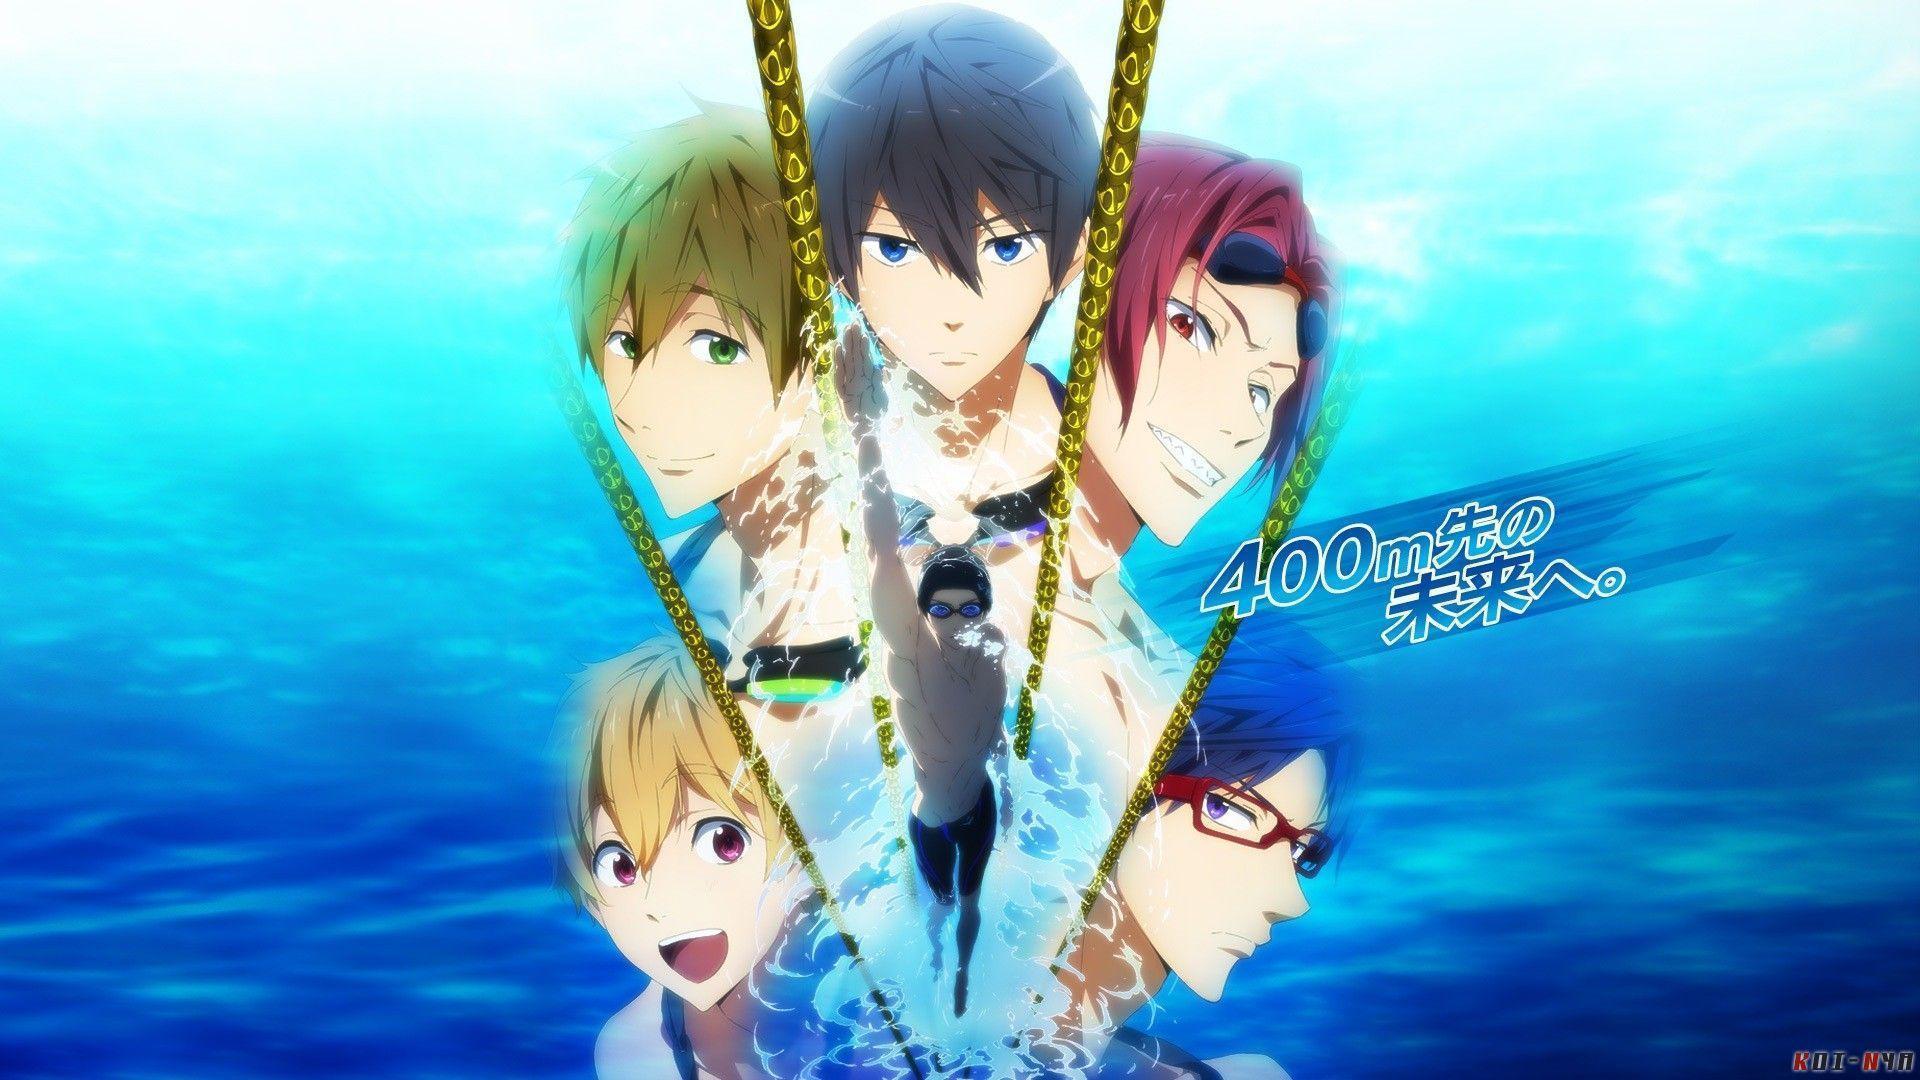 Free! Iwatobi Swim Club Wallpaper! Iwatobi